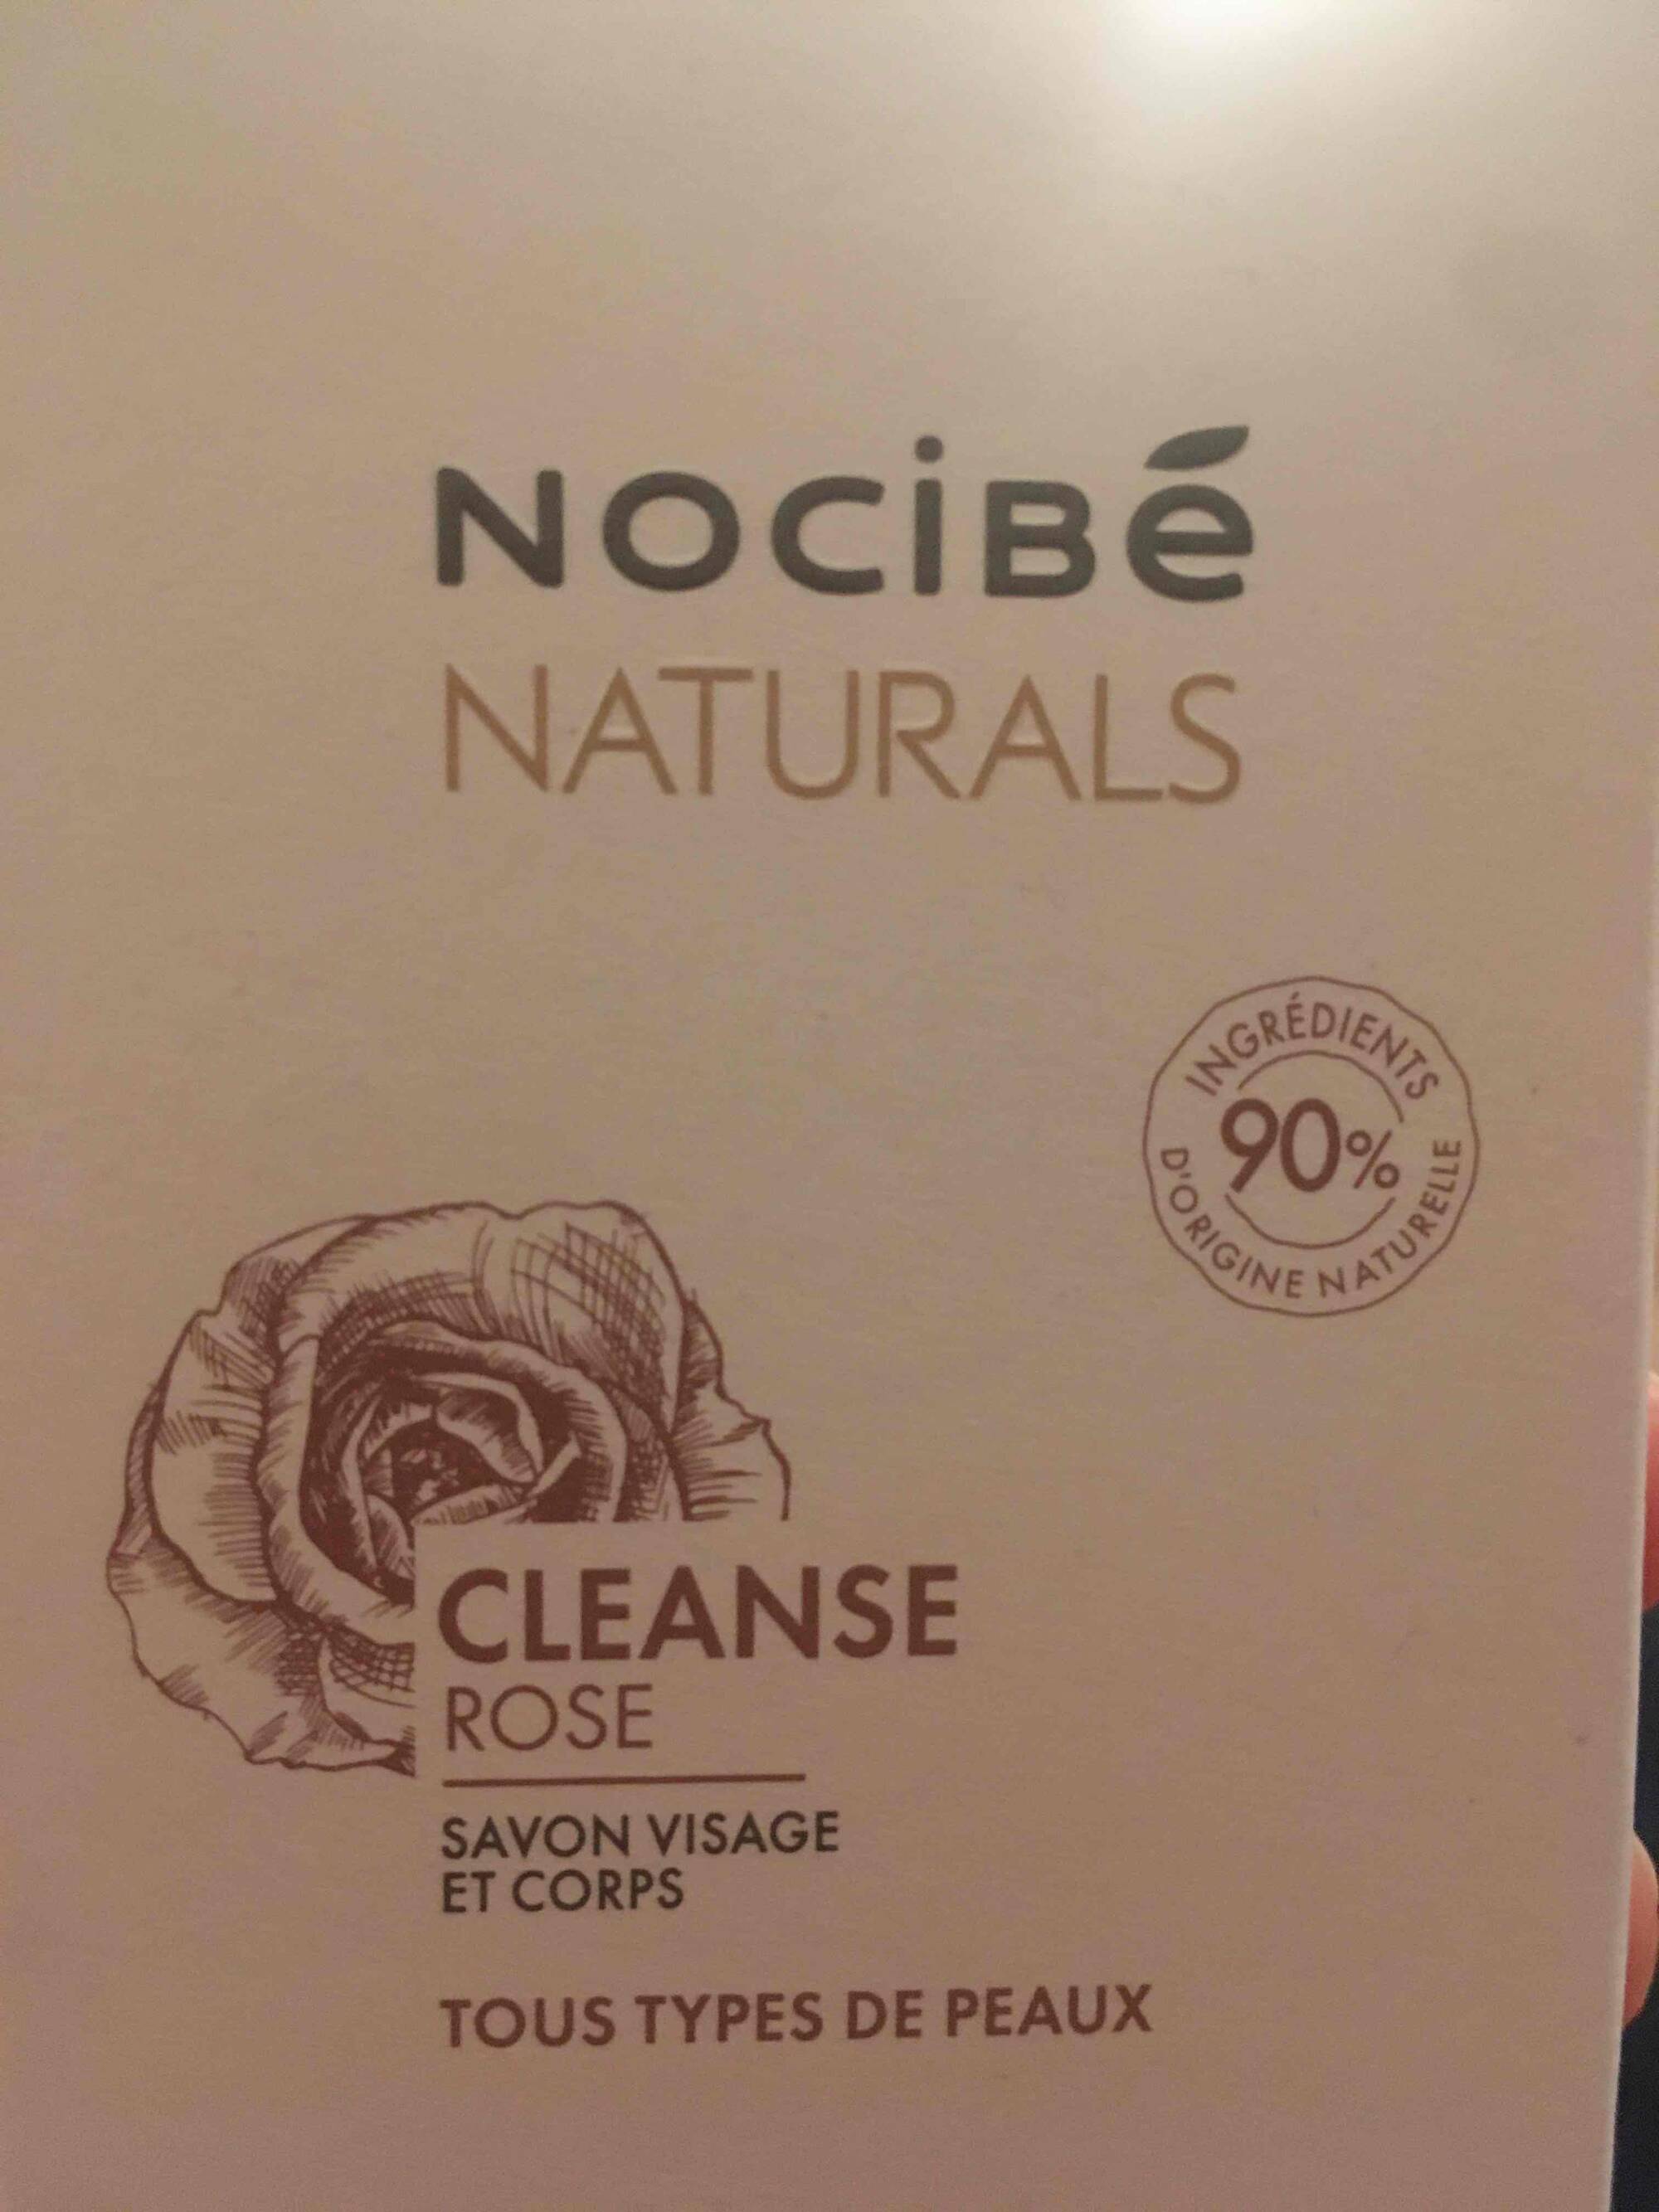 NOCIBÉ - Naturals Cleanse rose - Savon visage et corps